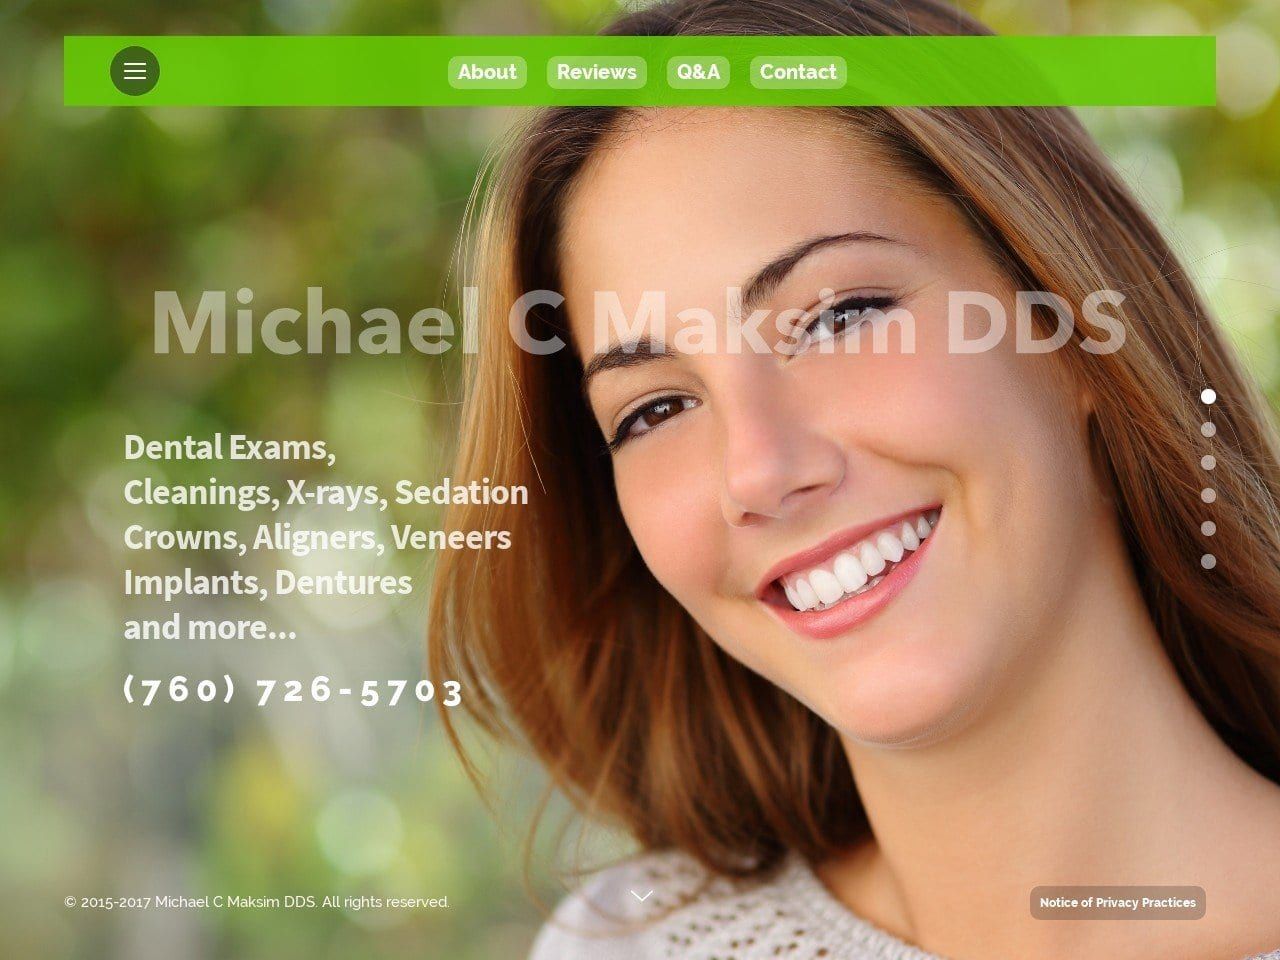 Michael C. Maksim DDS Website Screenshot from michaelmaksimdds.com